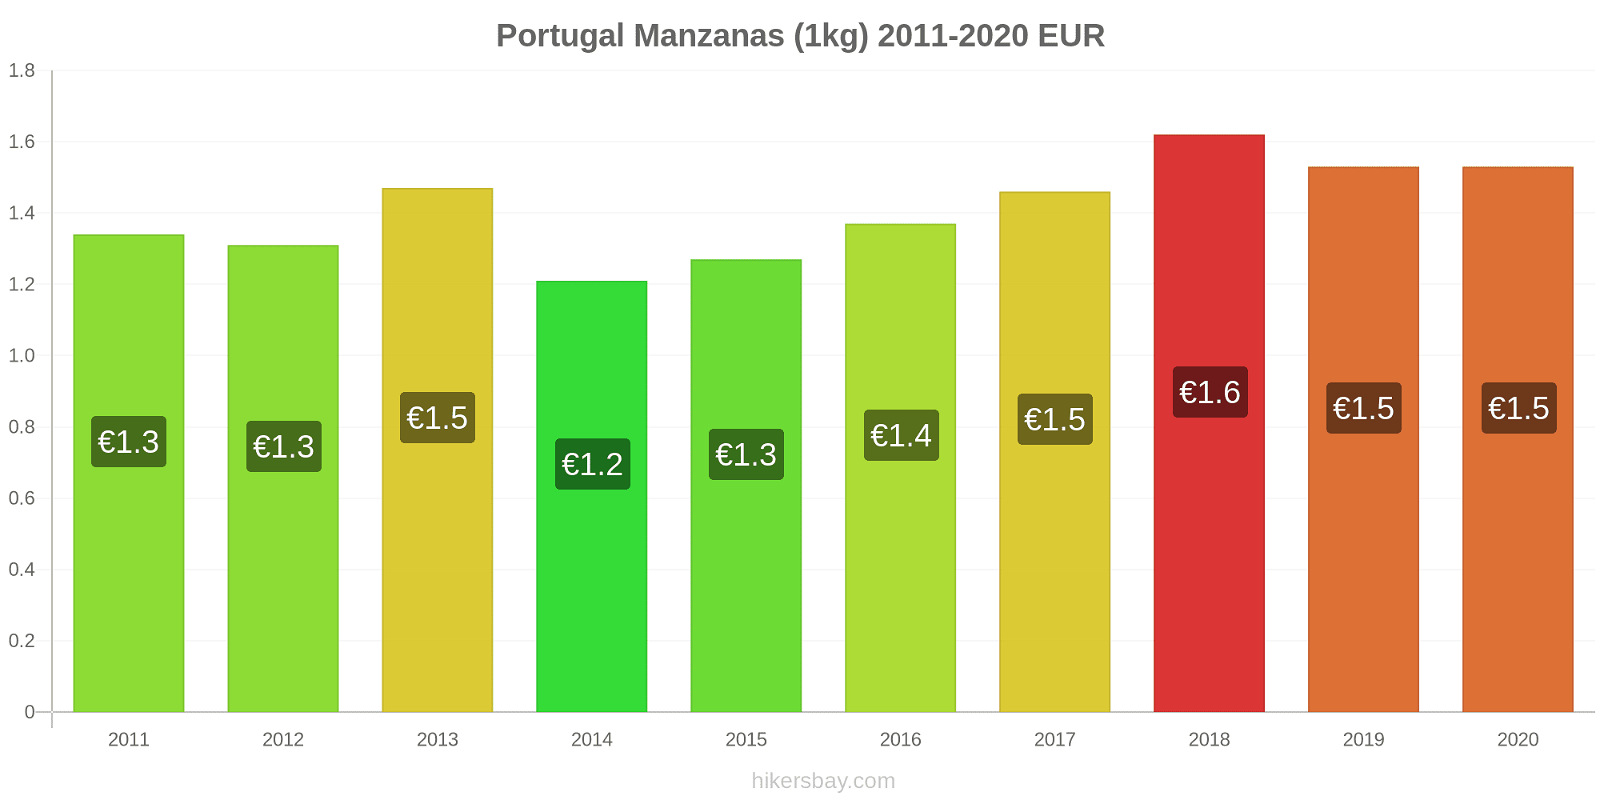 Portugal cambios de precios Manzanas (1kg) hikersbay.com